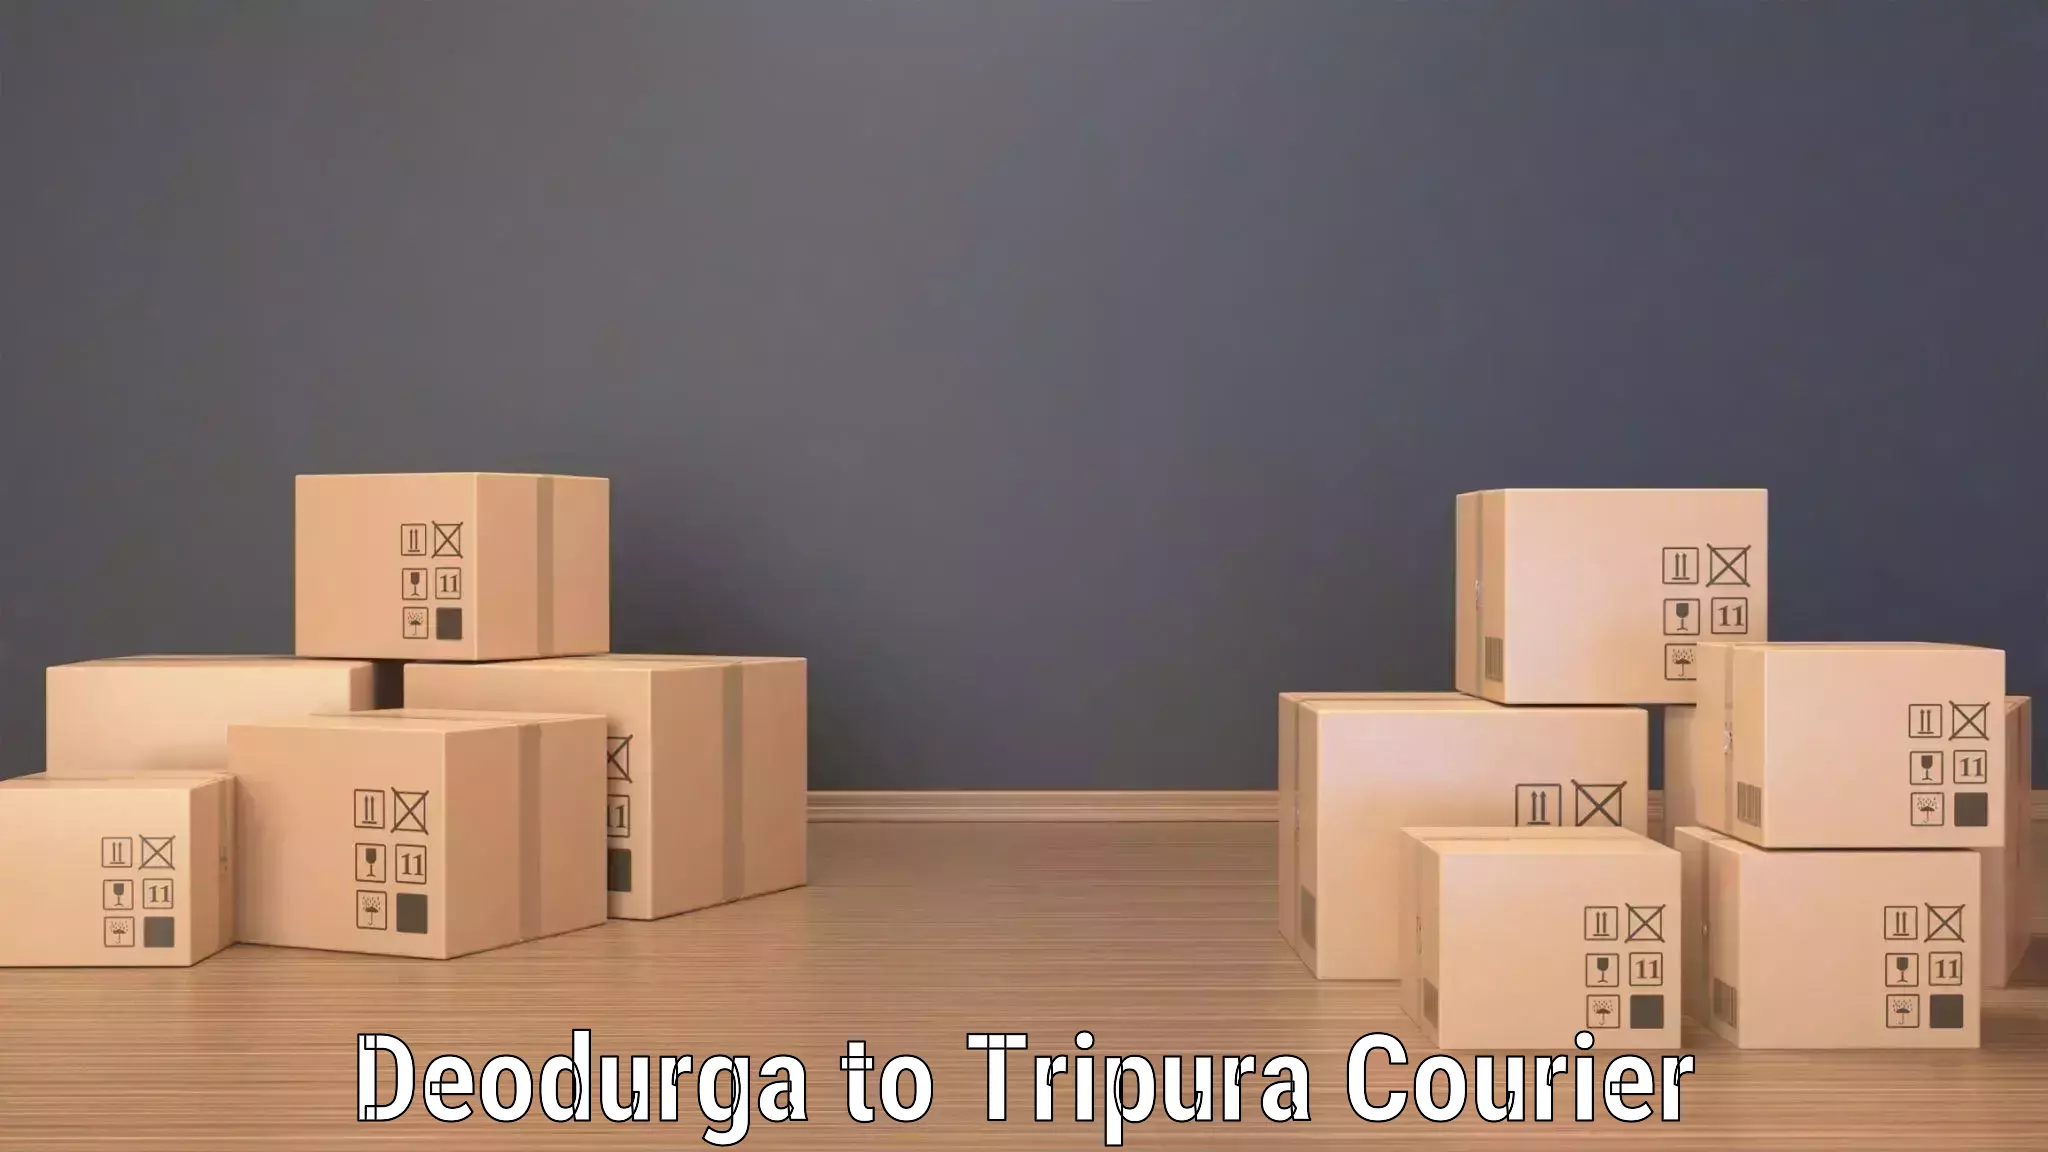 Next day courier Deodurga to West Tripura